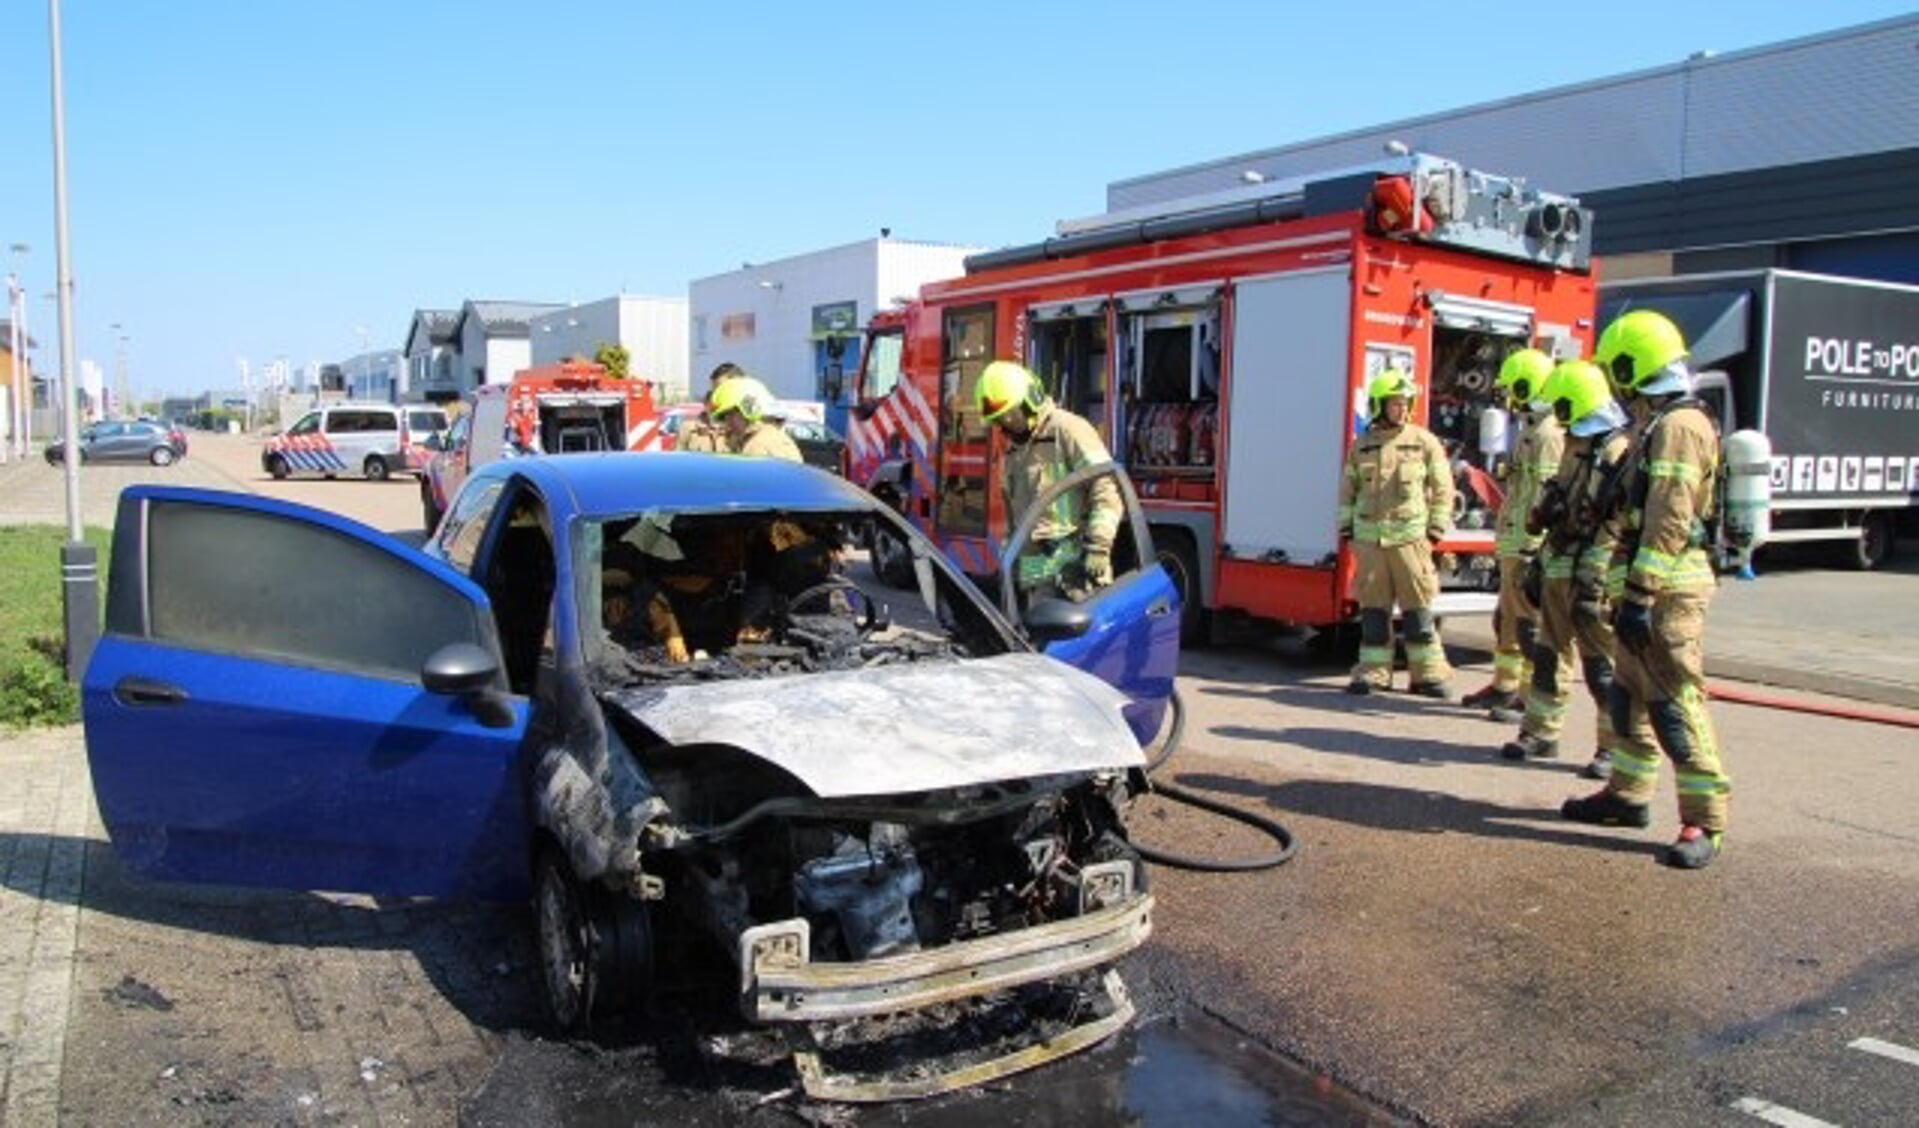 De auto was net opgehaald uit een garage, toen het voertuig vlam vatte. (Foto: Spa Media)